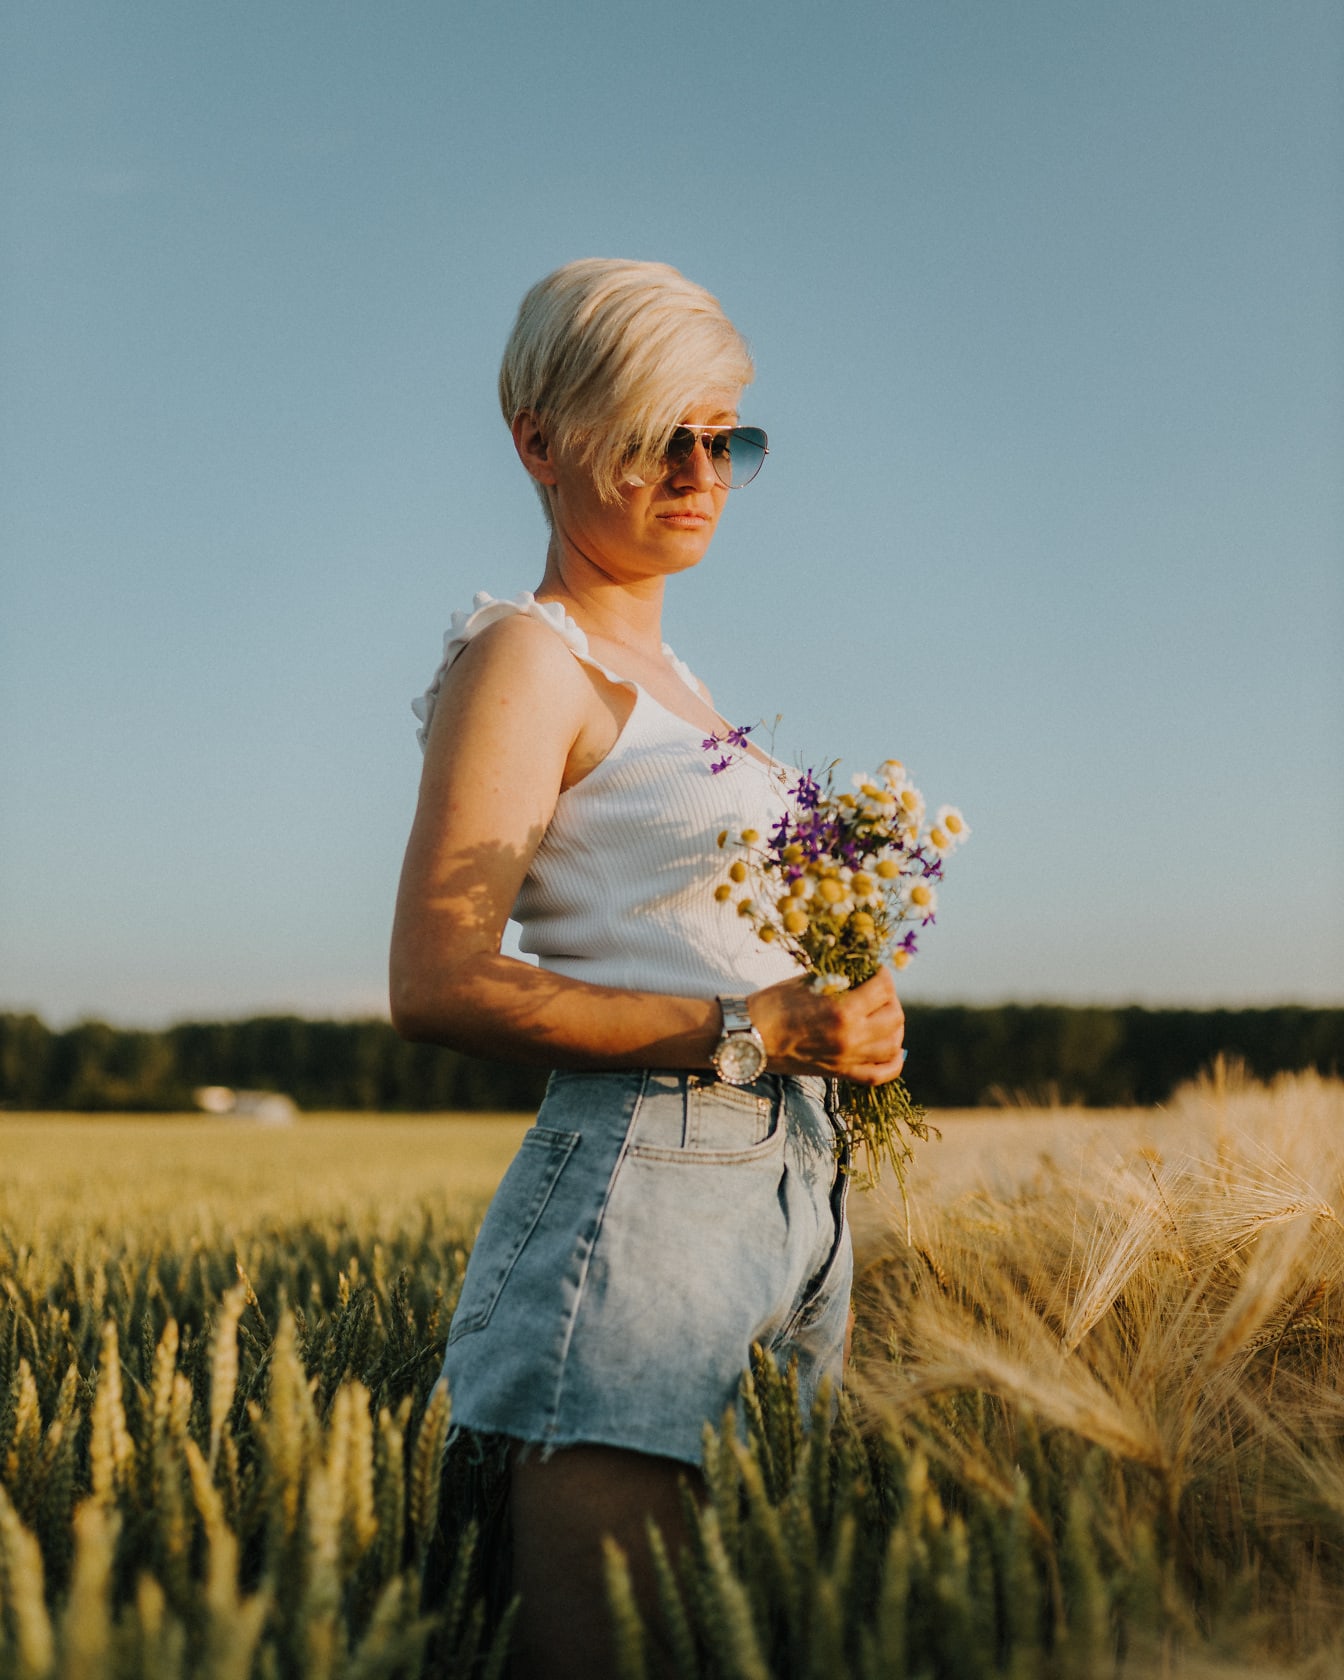 Urocza krótkowłosa blondynka z bukietem kwiatów na polu pszenicy